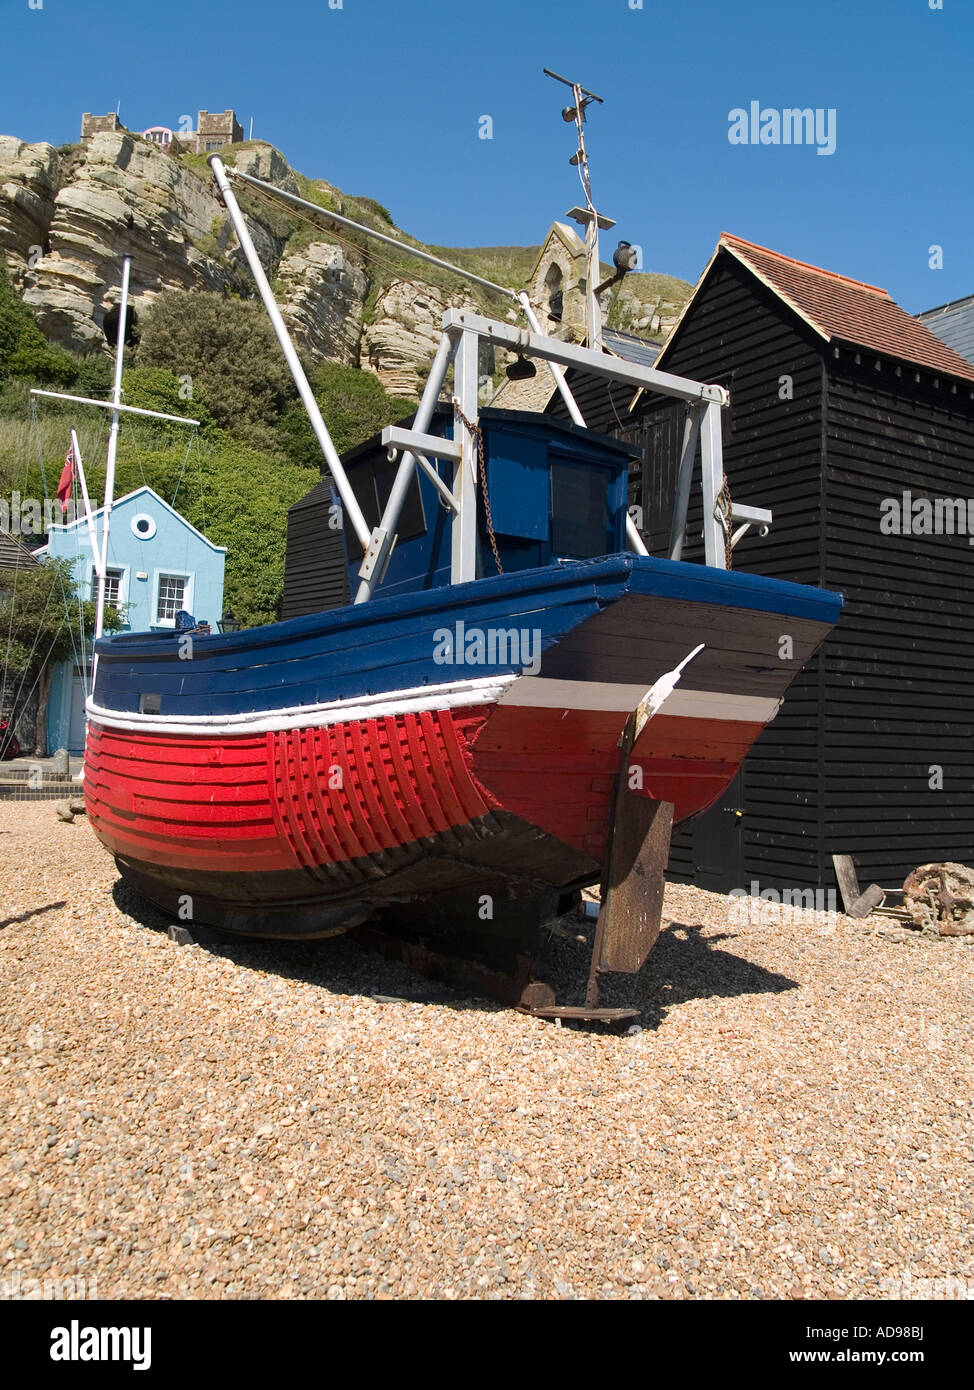 Un tradizionale di rosso e di blu dipinto di barca da pesca al di fuori del centro storico di capanne in legno per lo storage di rete East Cliff Hastings Regno Unito Foto Stock